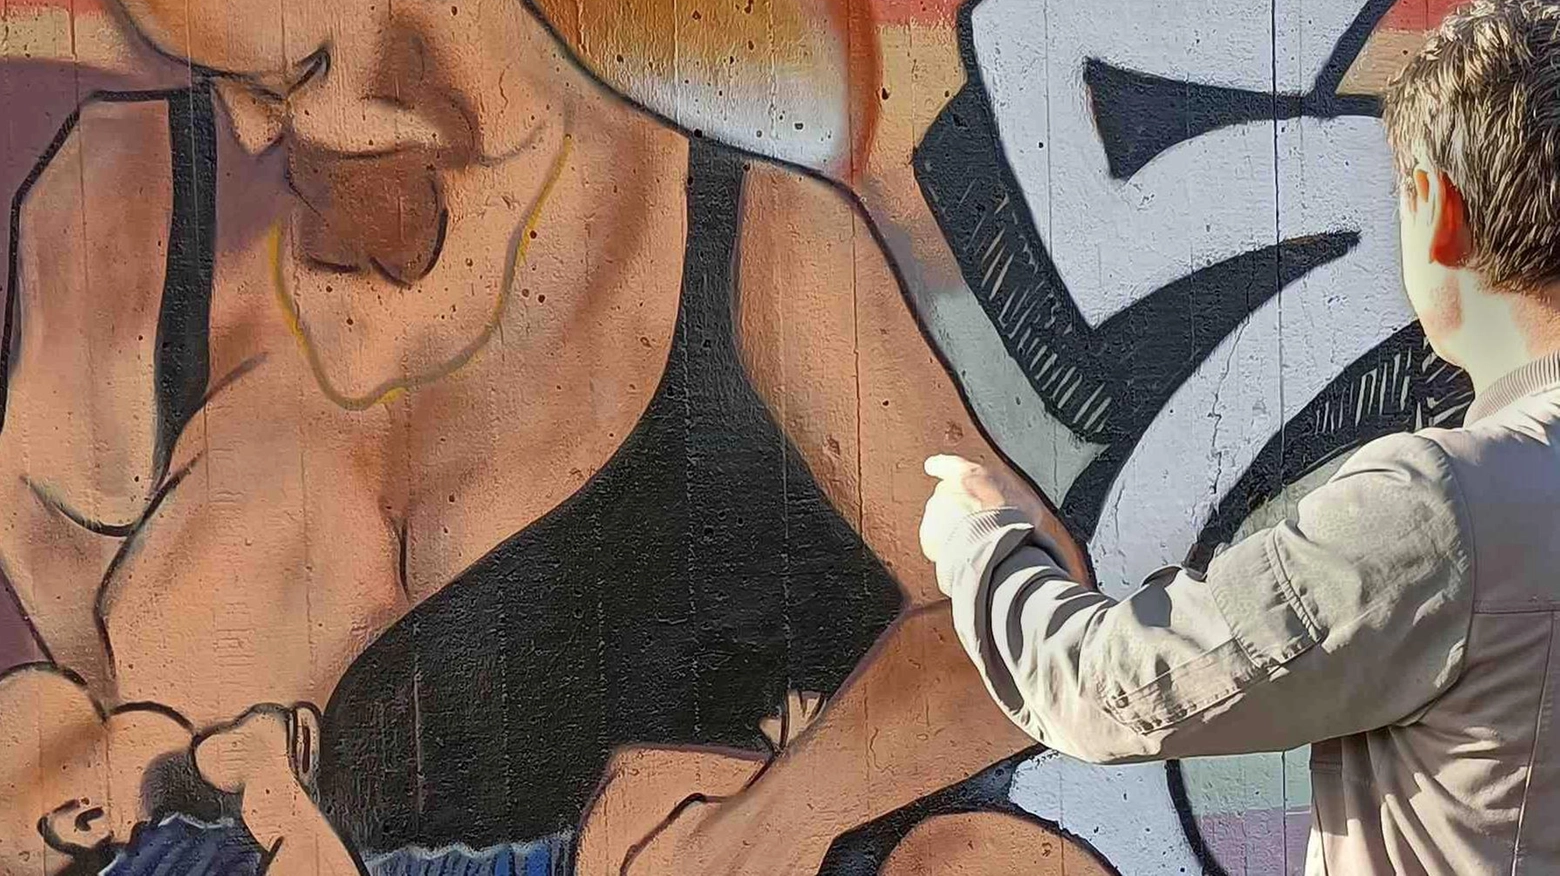 Gli attivisti: "Rifaremo il murales dell'uomo che allatta"